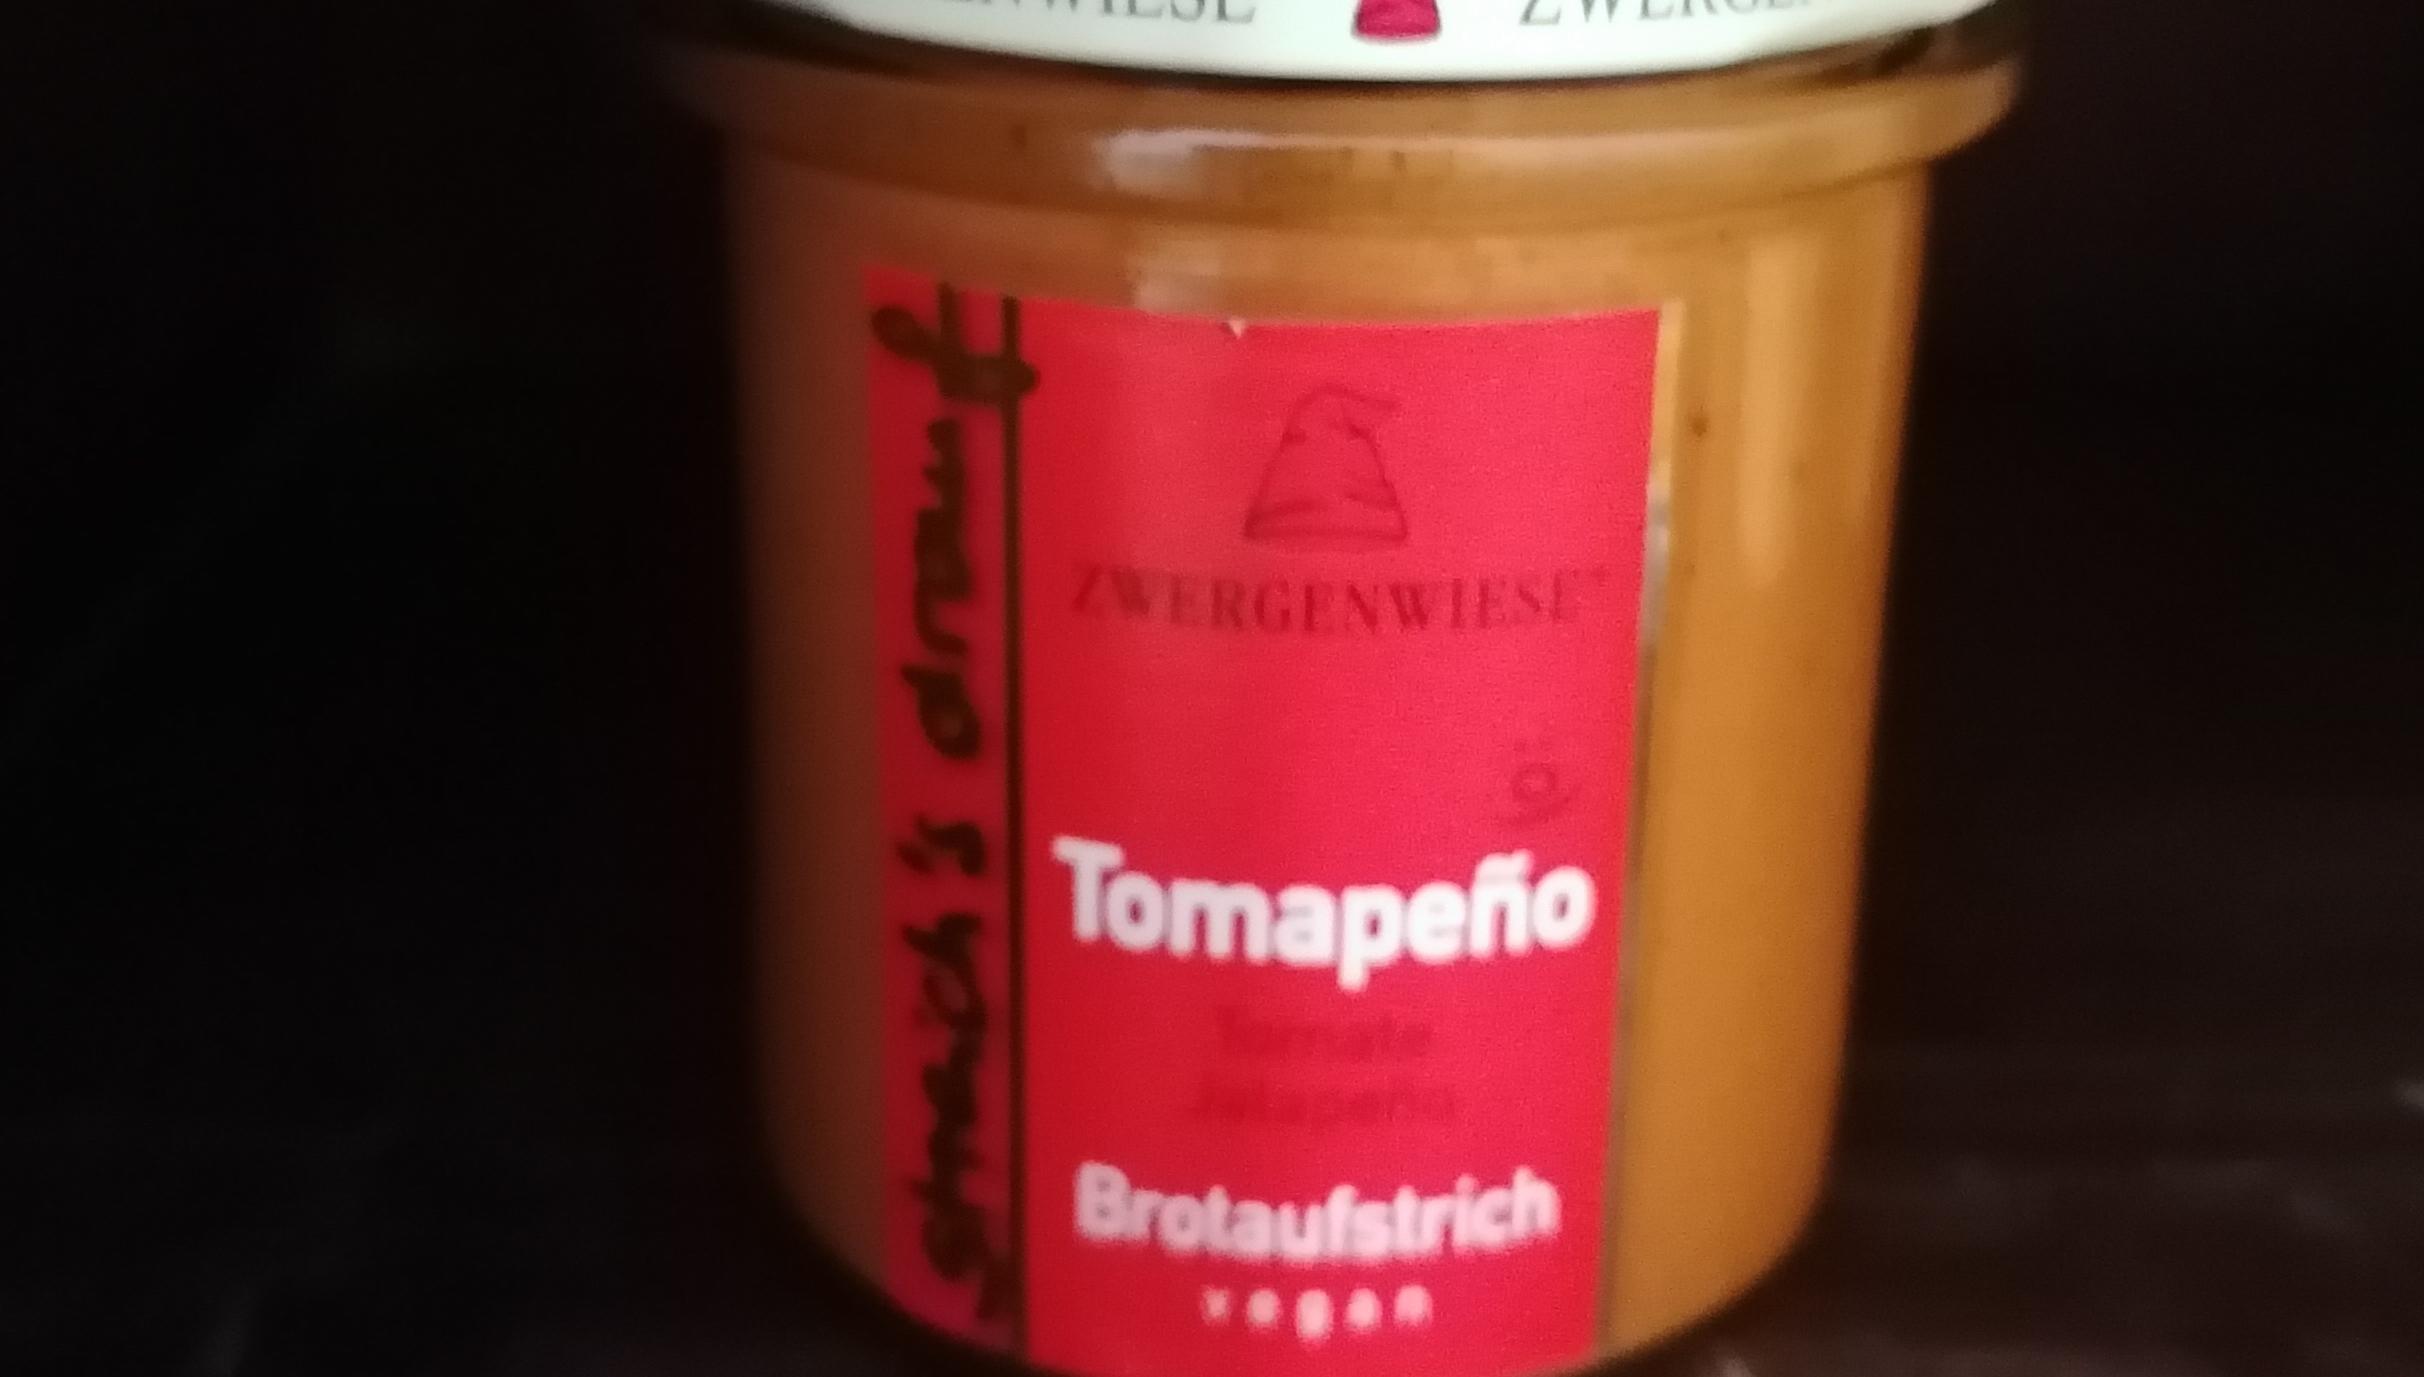 Aufstrich Zwergenwiese: Streich´s drauf - Tomapeno / Tomate und Jalapeno